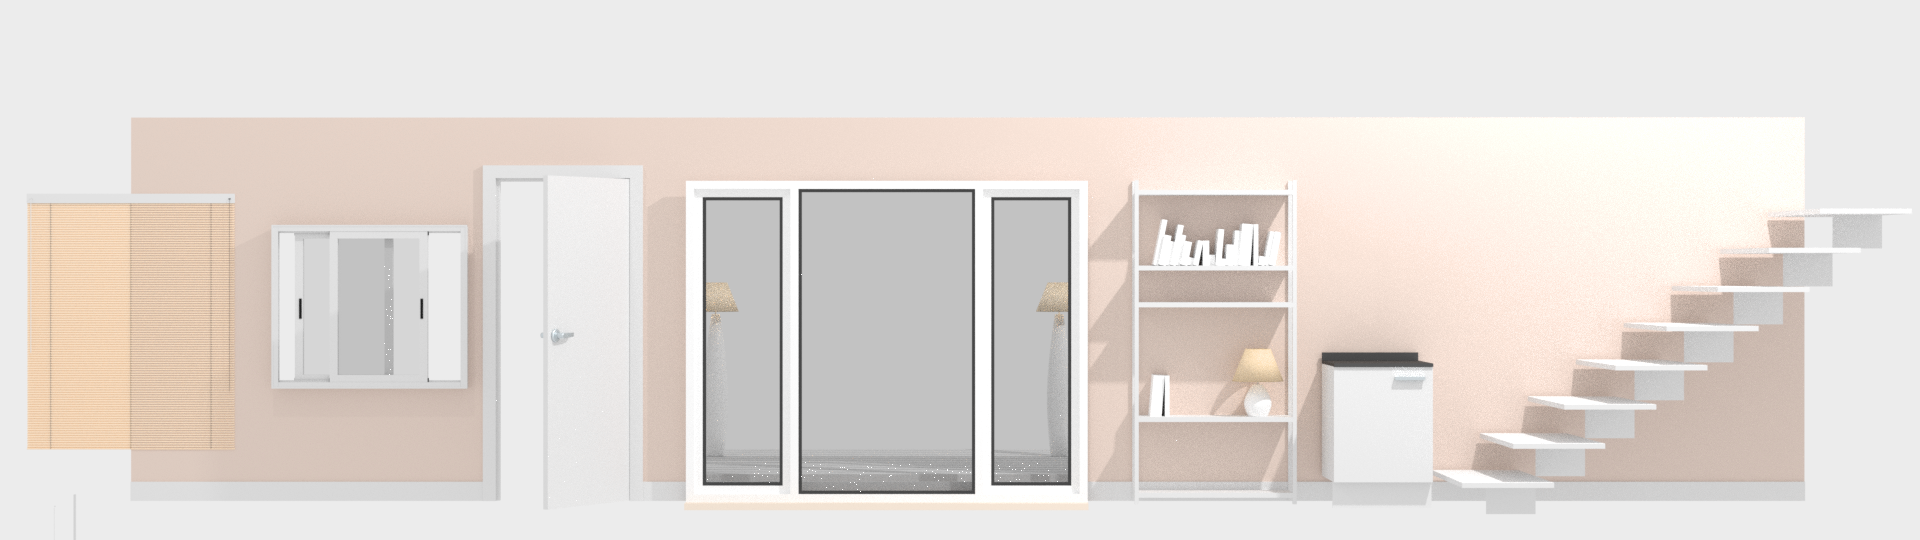 blender Addon Archimesh 壁や窓やドアなどを簡単に作ってくれる機能